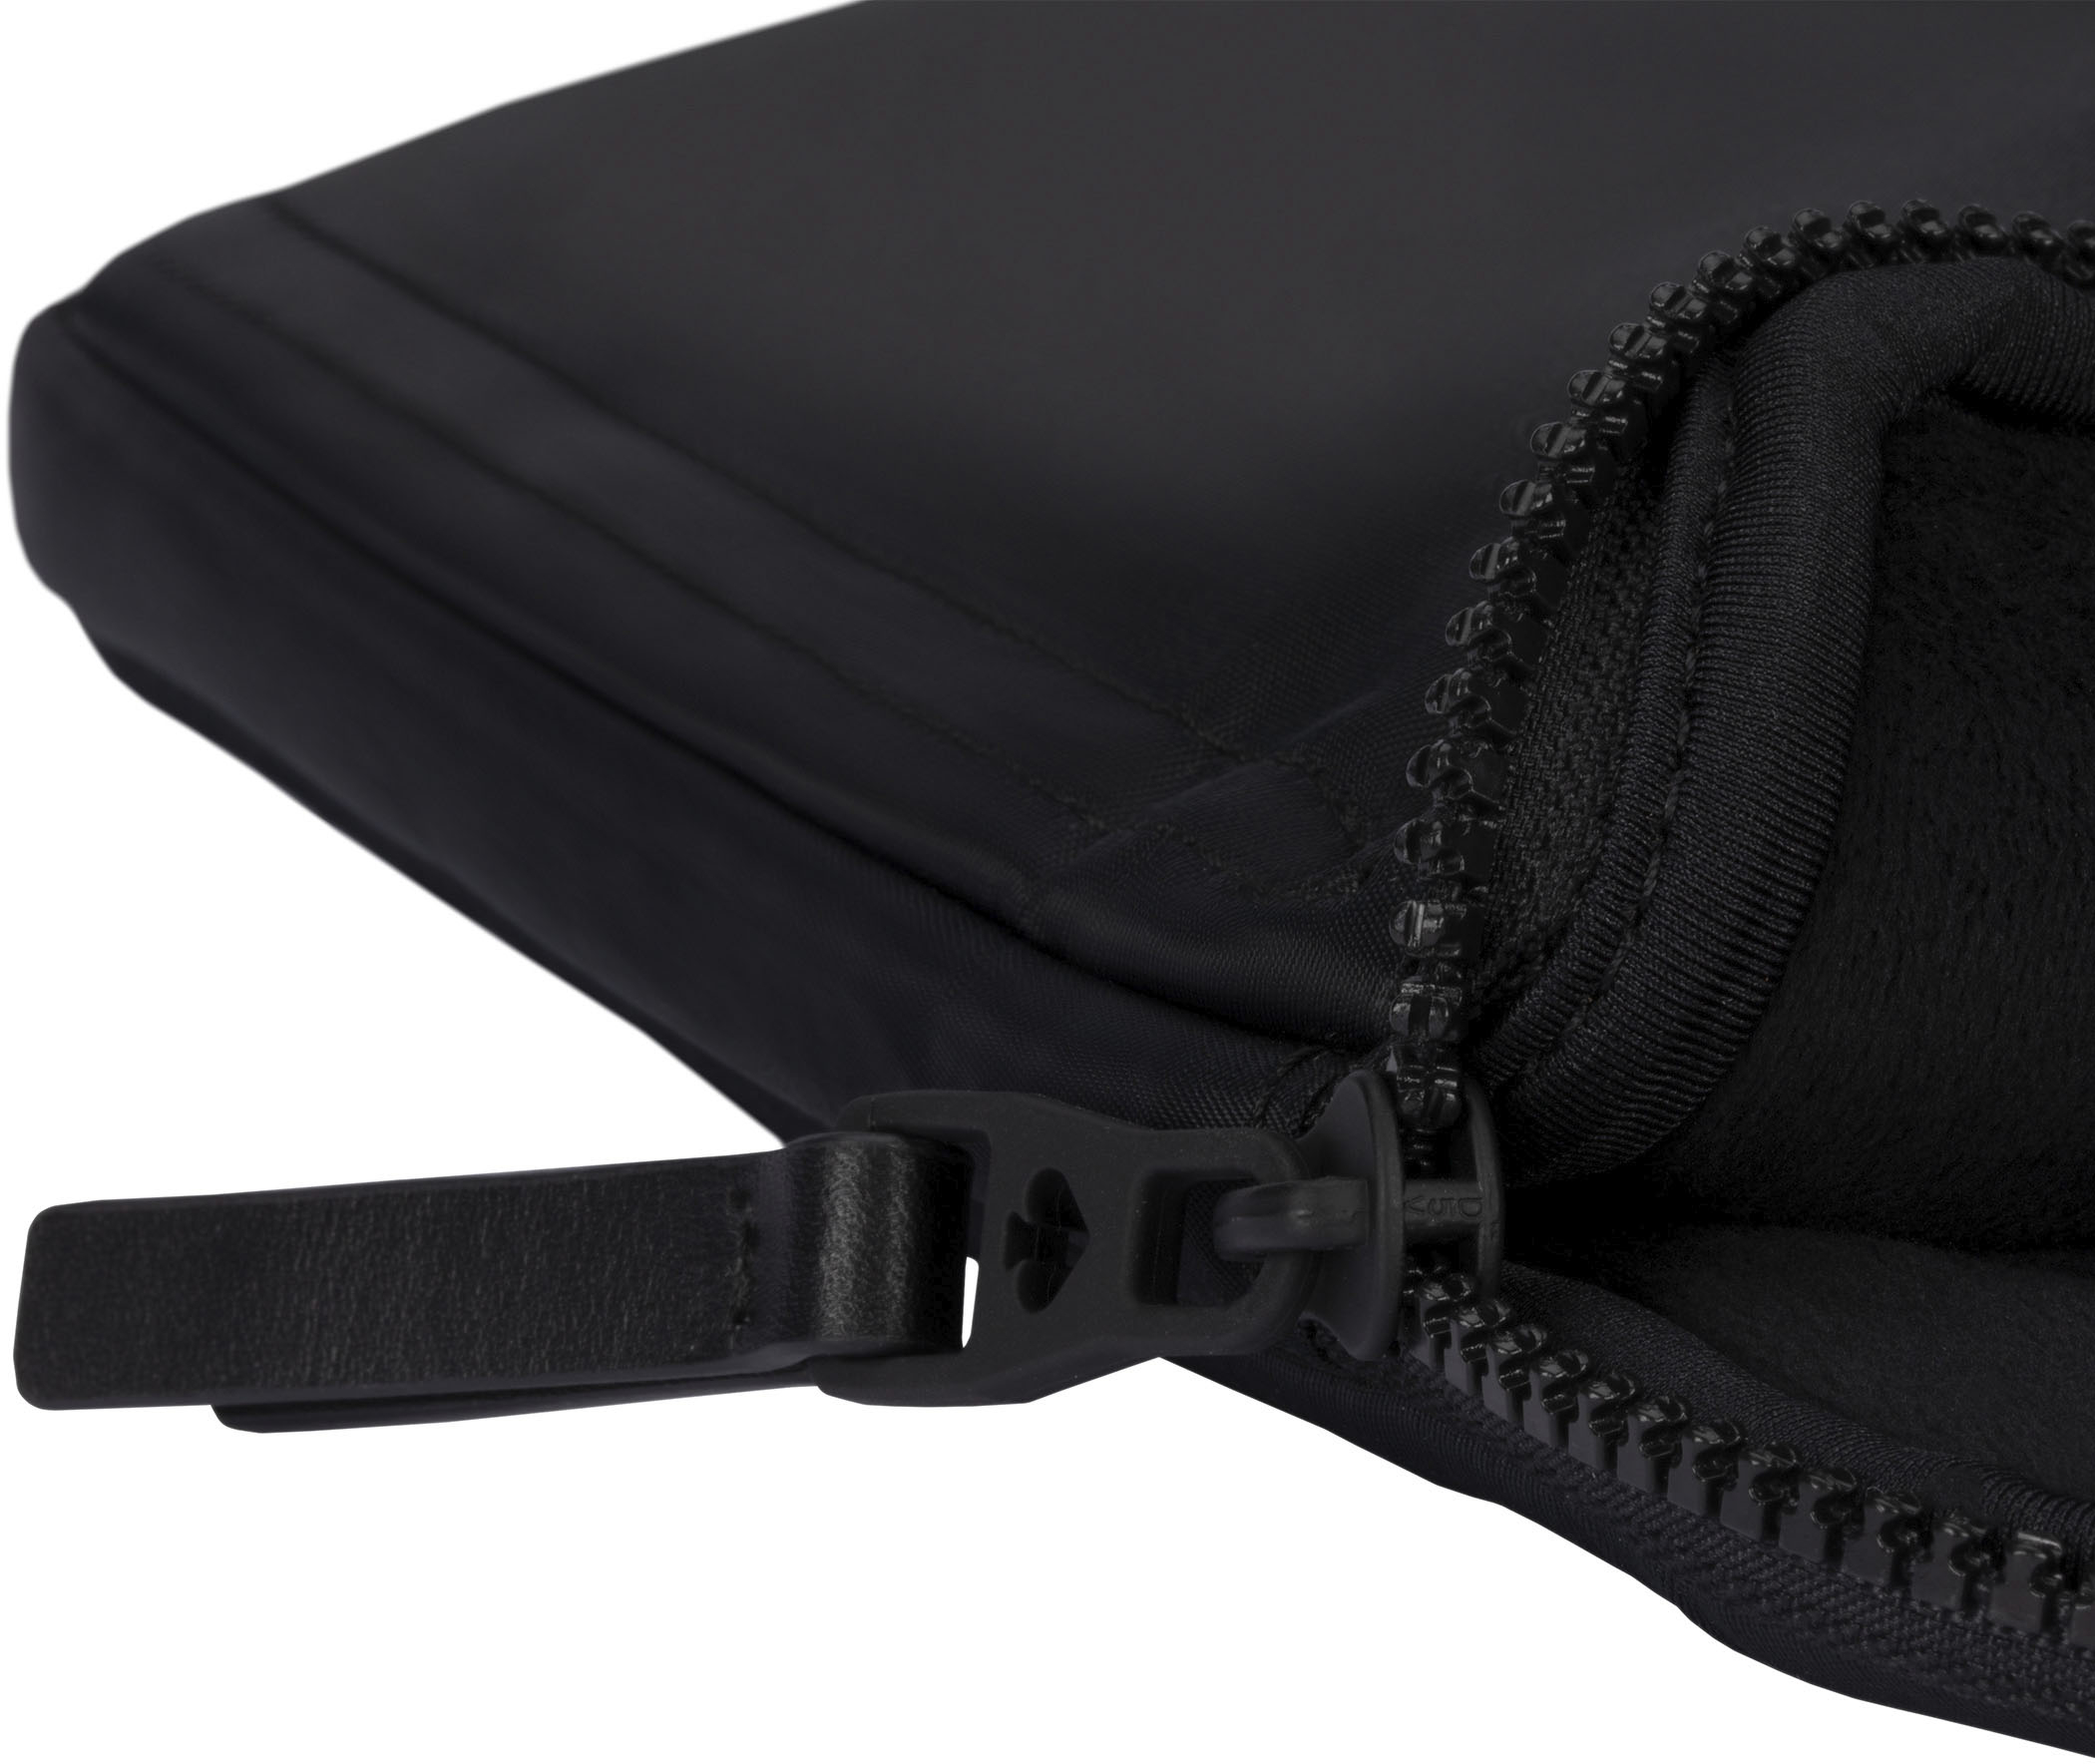 Best Buy: kate spade new york Laptop Sleeve for 15-16 Black KSMB